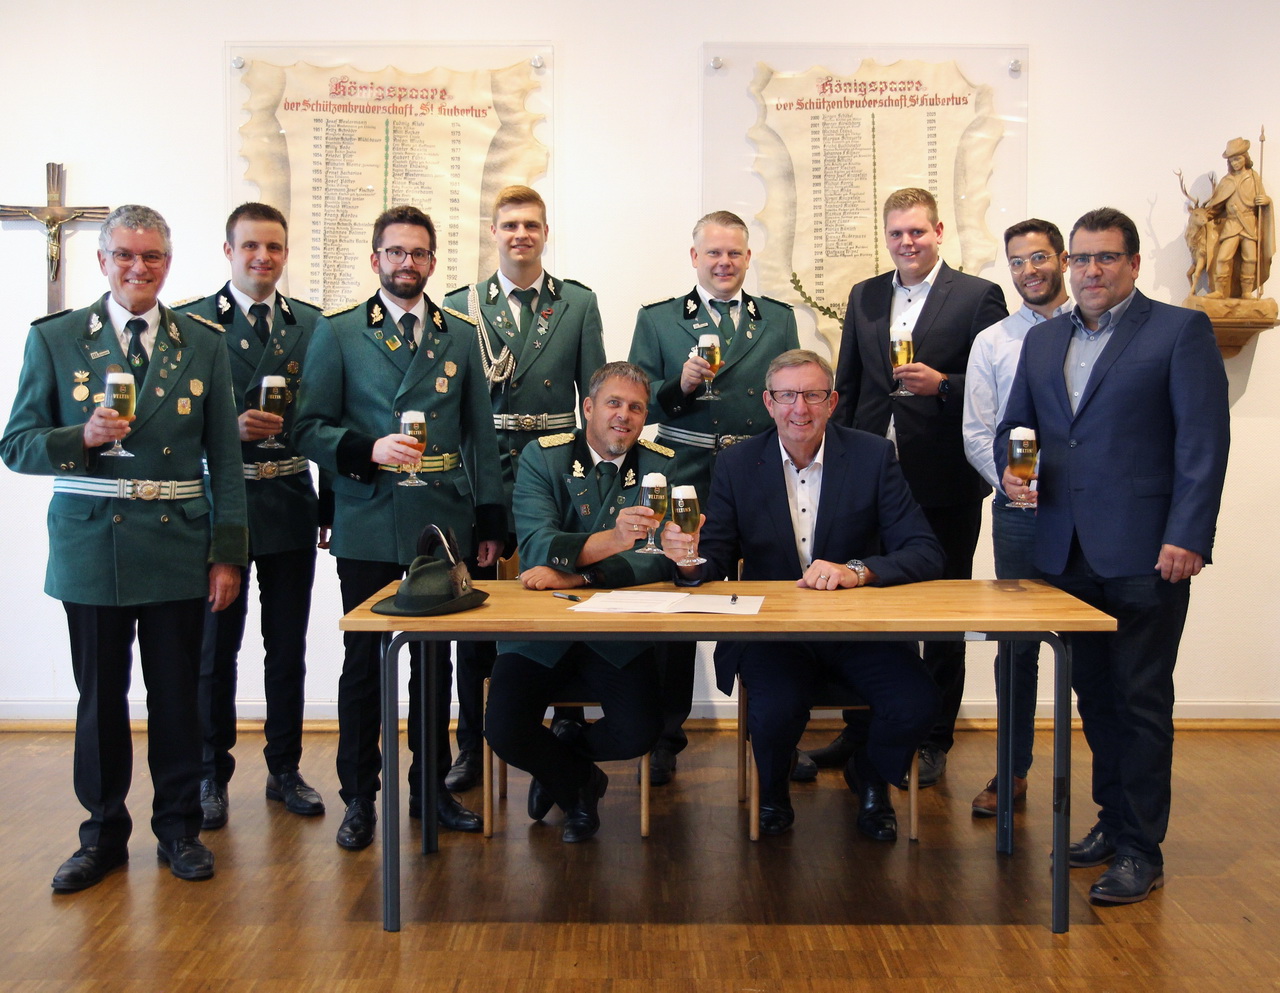 Die Partnerschaft zwischen der St.-Hubertus-Schützenbruderschaft Sundern und der Brauerei C. & A. Veltins sowie dem WGS wurde besiegelt. Foto: Lena Klute / Veltins